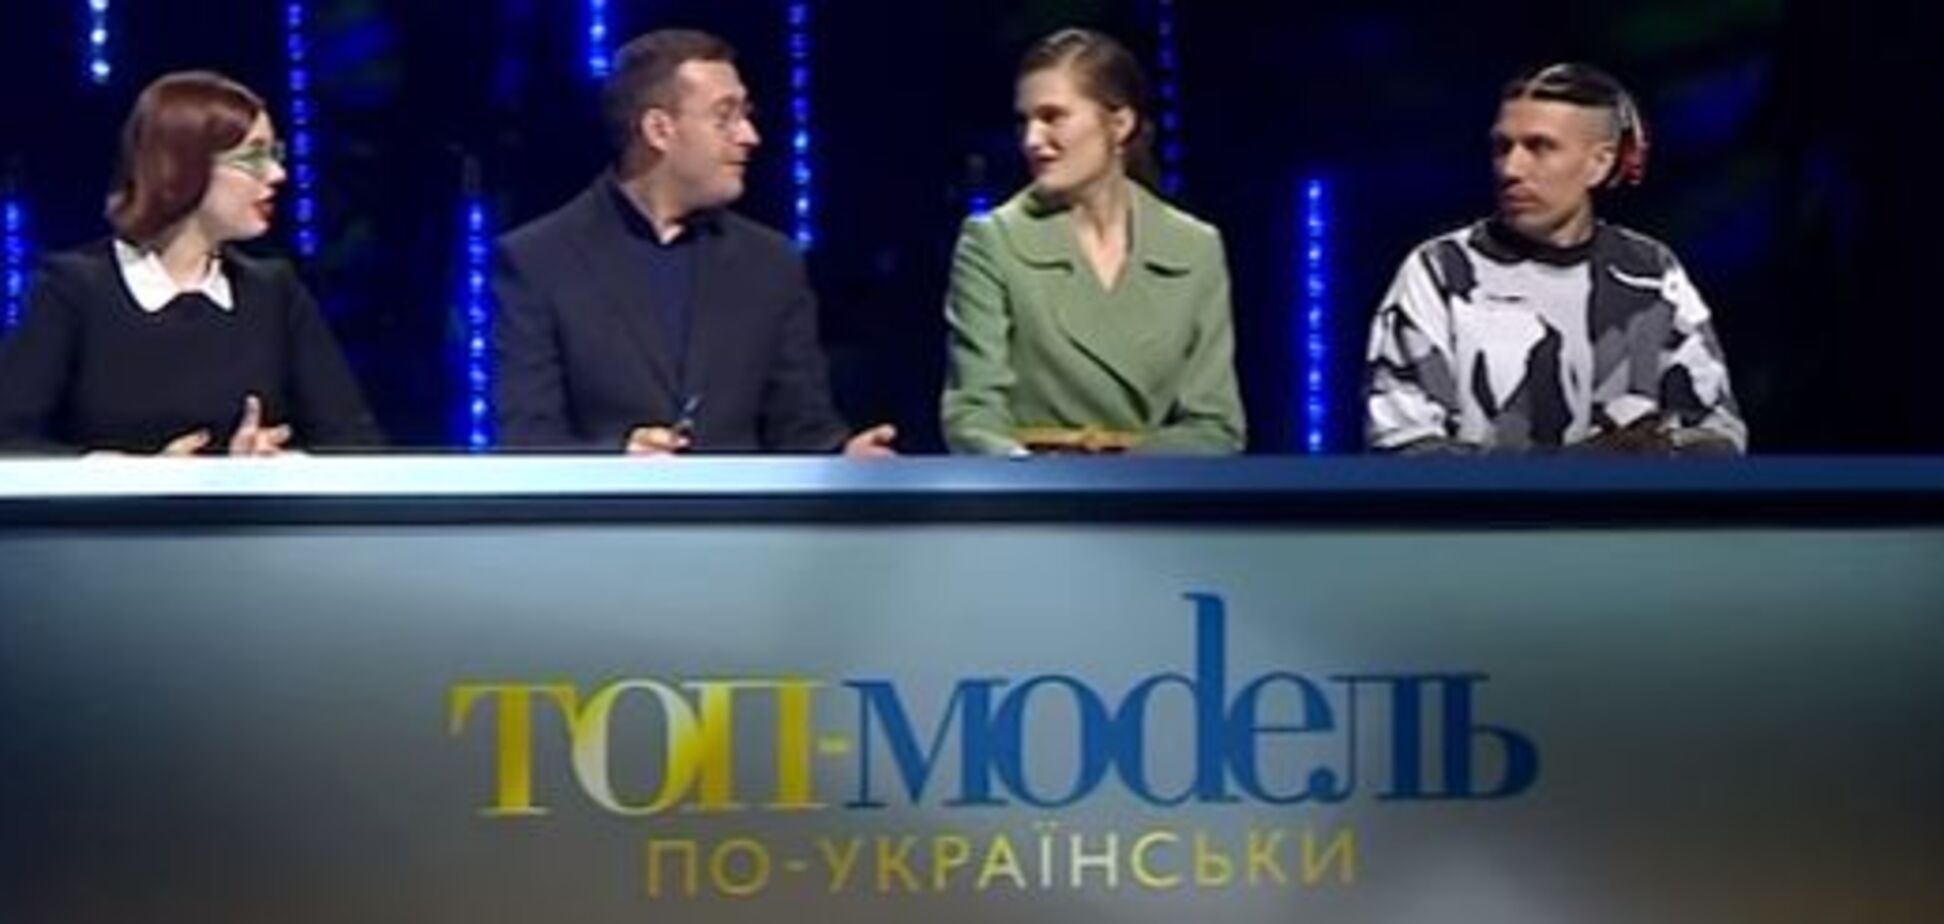 'Выглядите безобразно!' Самые смешные моменты шоу 'Топ-модель по-украински'